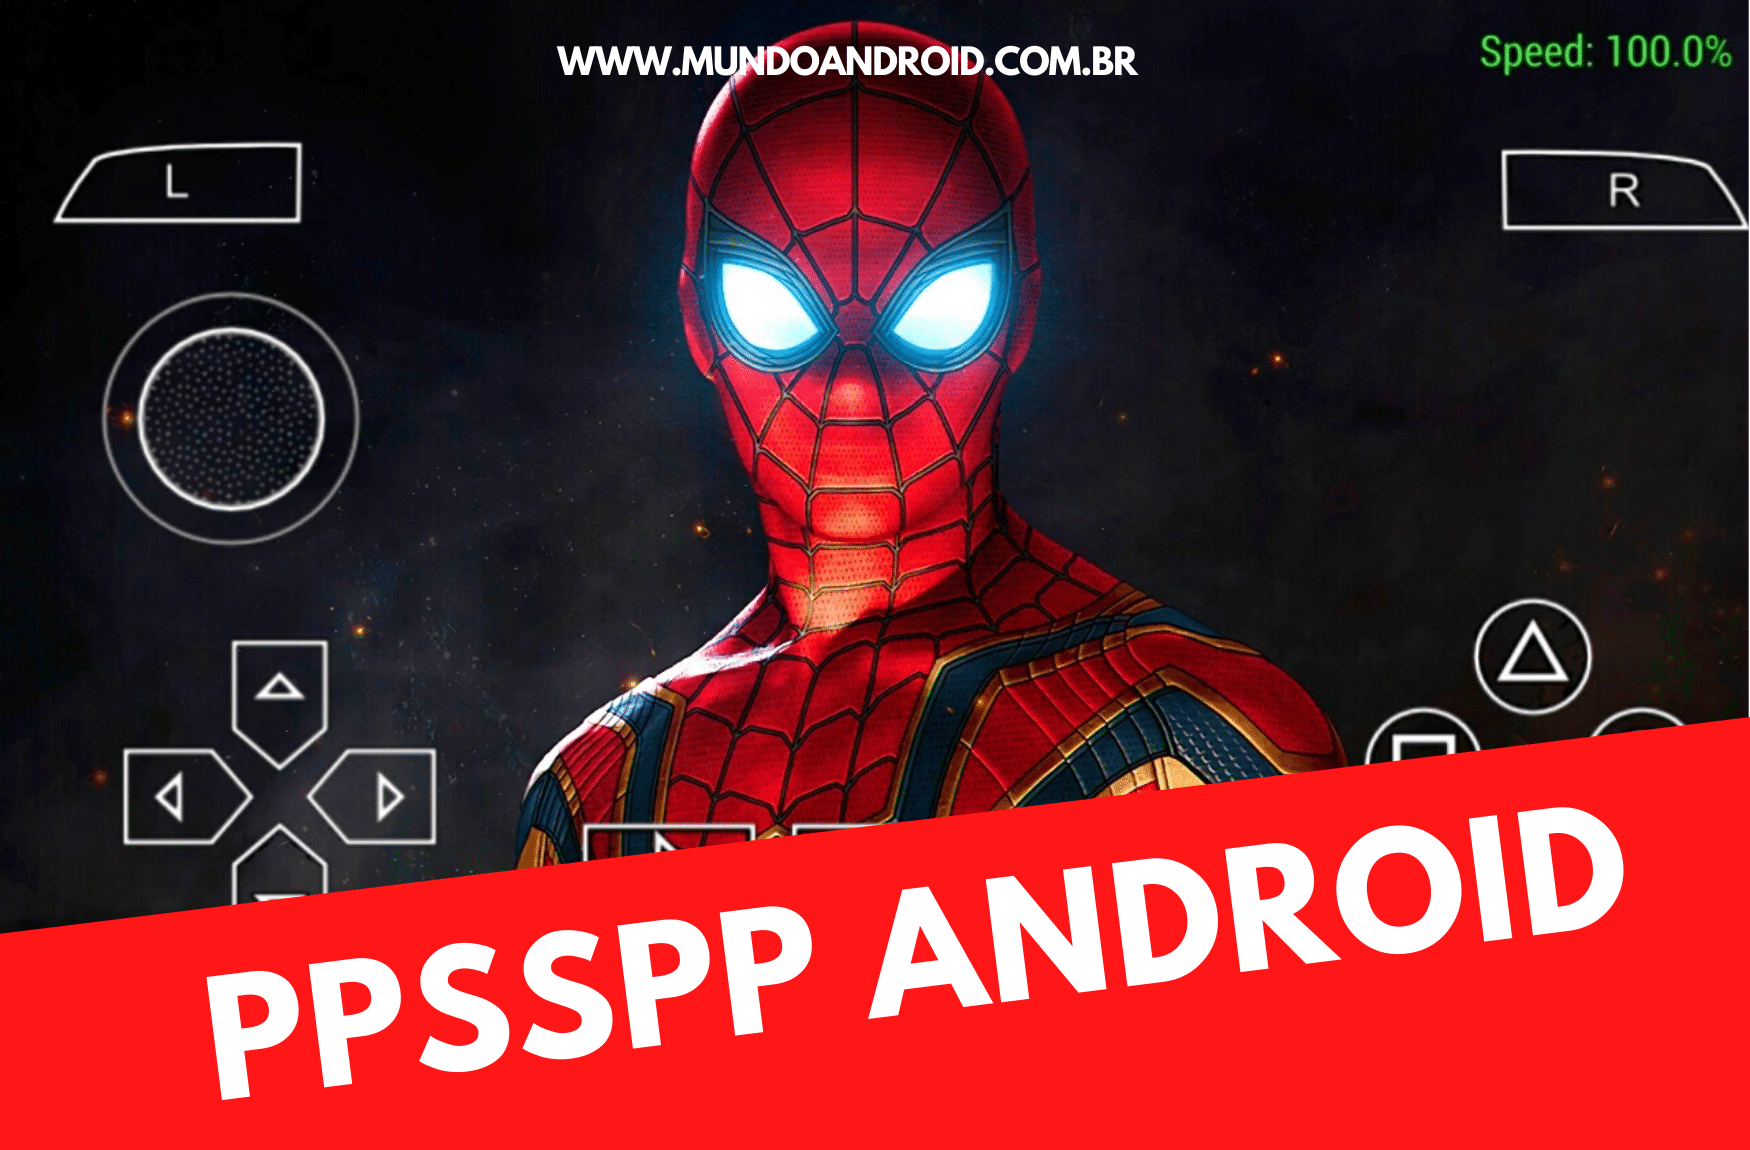 spider man 3 ppsspp download